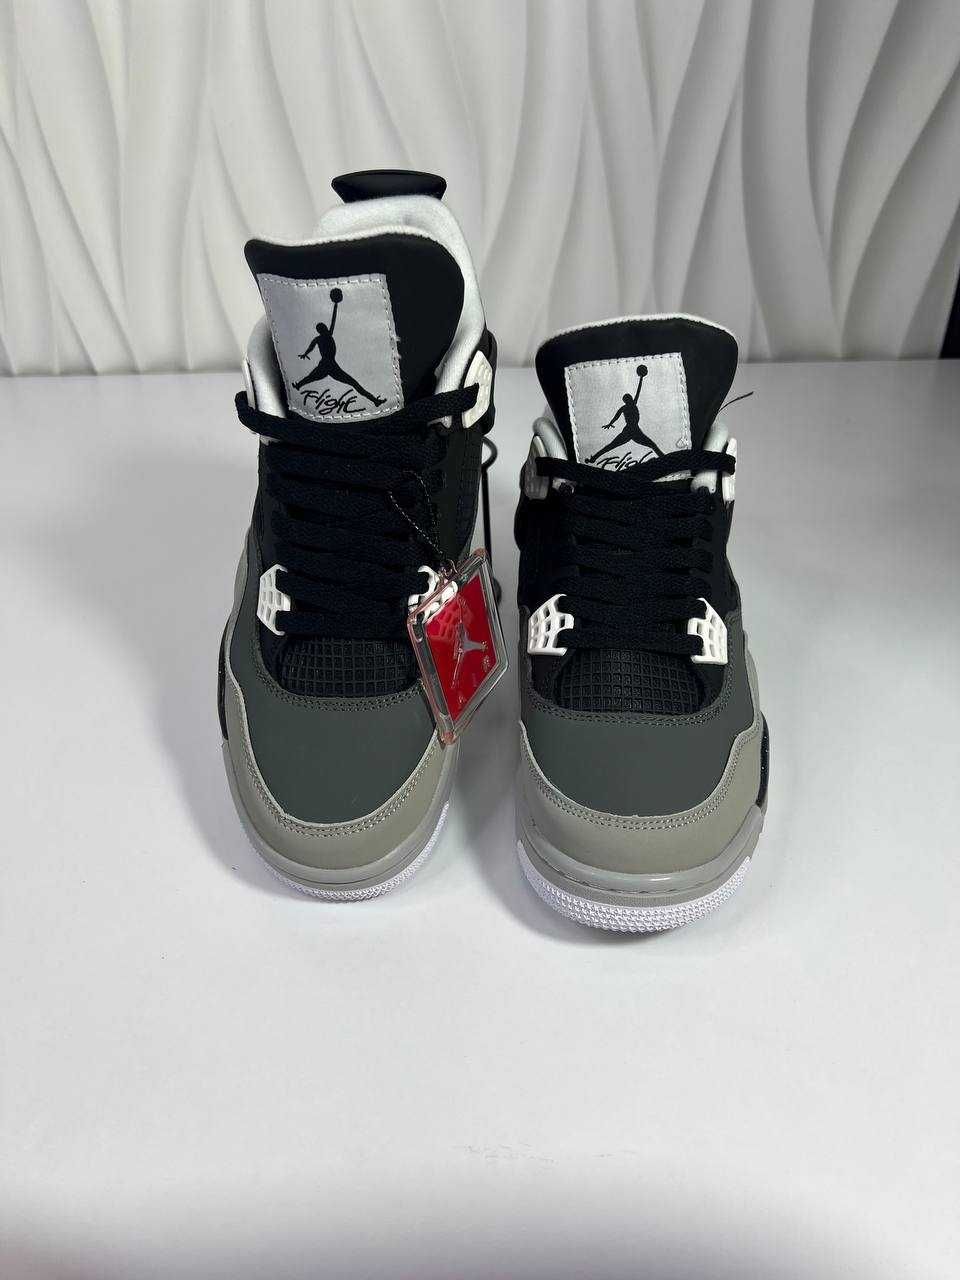 РОЗПРОДАЖА!! Кросівки Nike Air Jordan 4 Retro, Мужски Найк Аїр Джордан